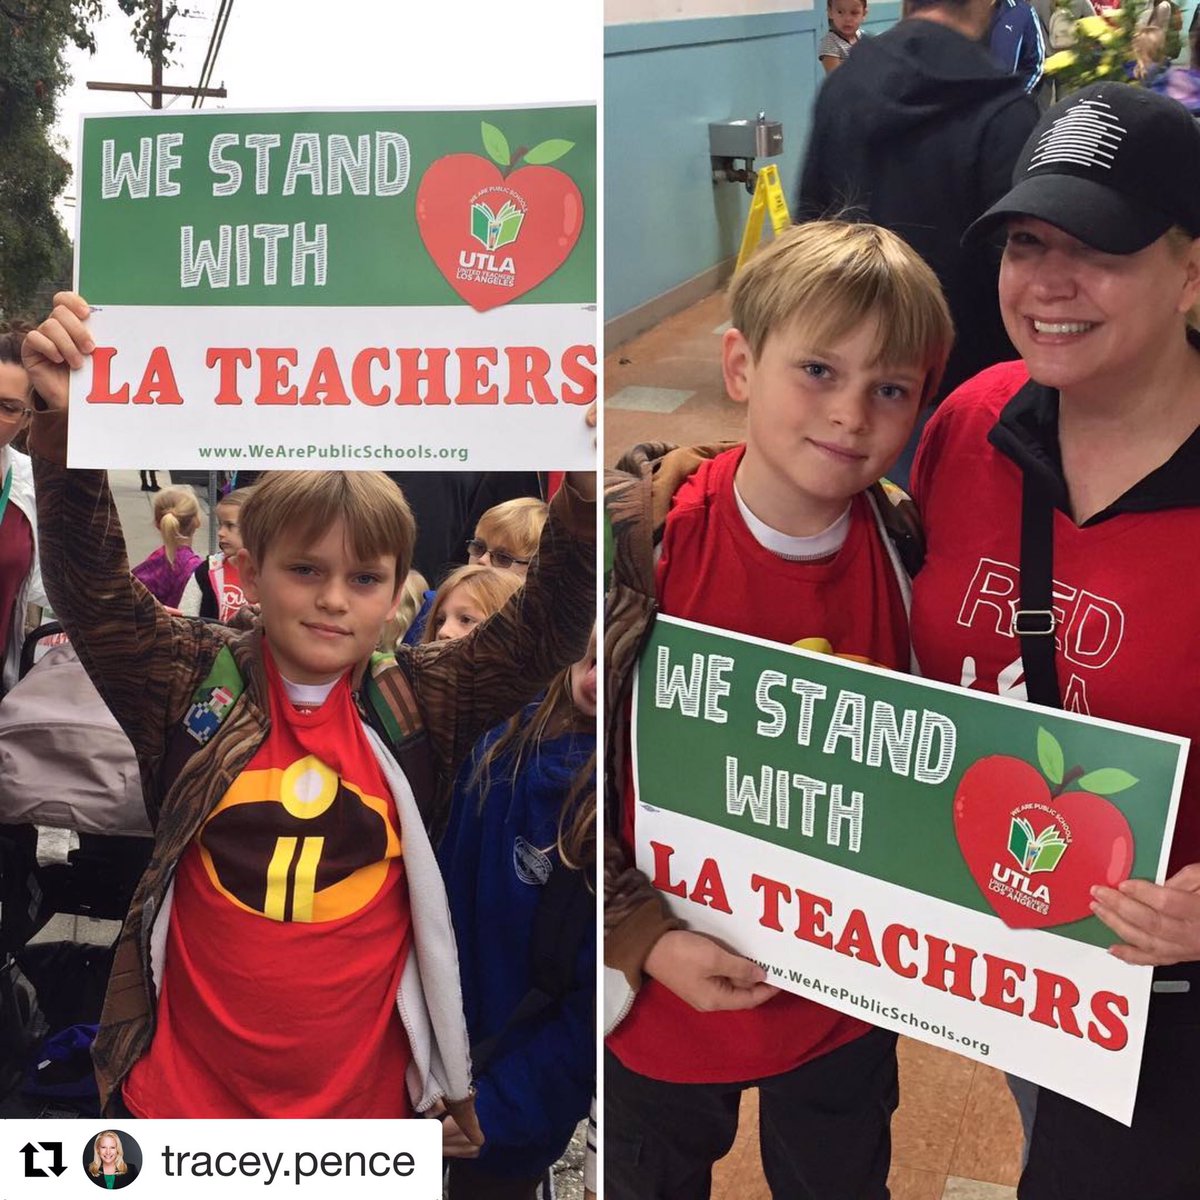 Stand with teachers!

#Repost @TraceyPence 
・・・
Support teachers and students! #traceysellsla #realestateinfocus #utla #utlastrong #smallerclasssizes #utlastrike